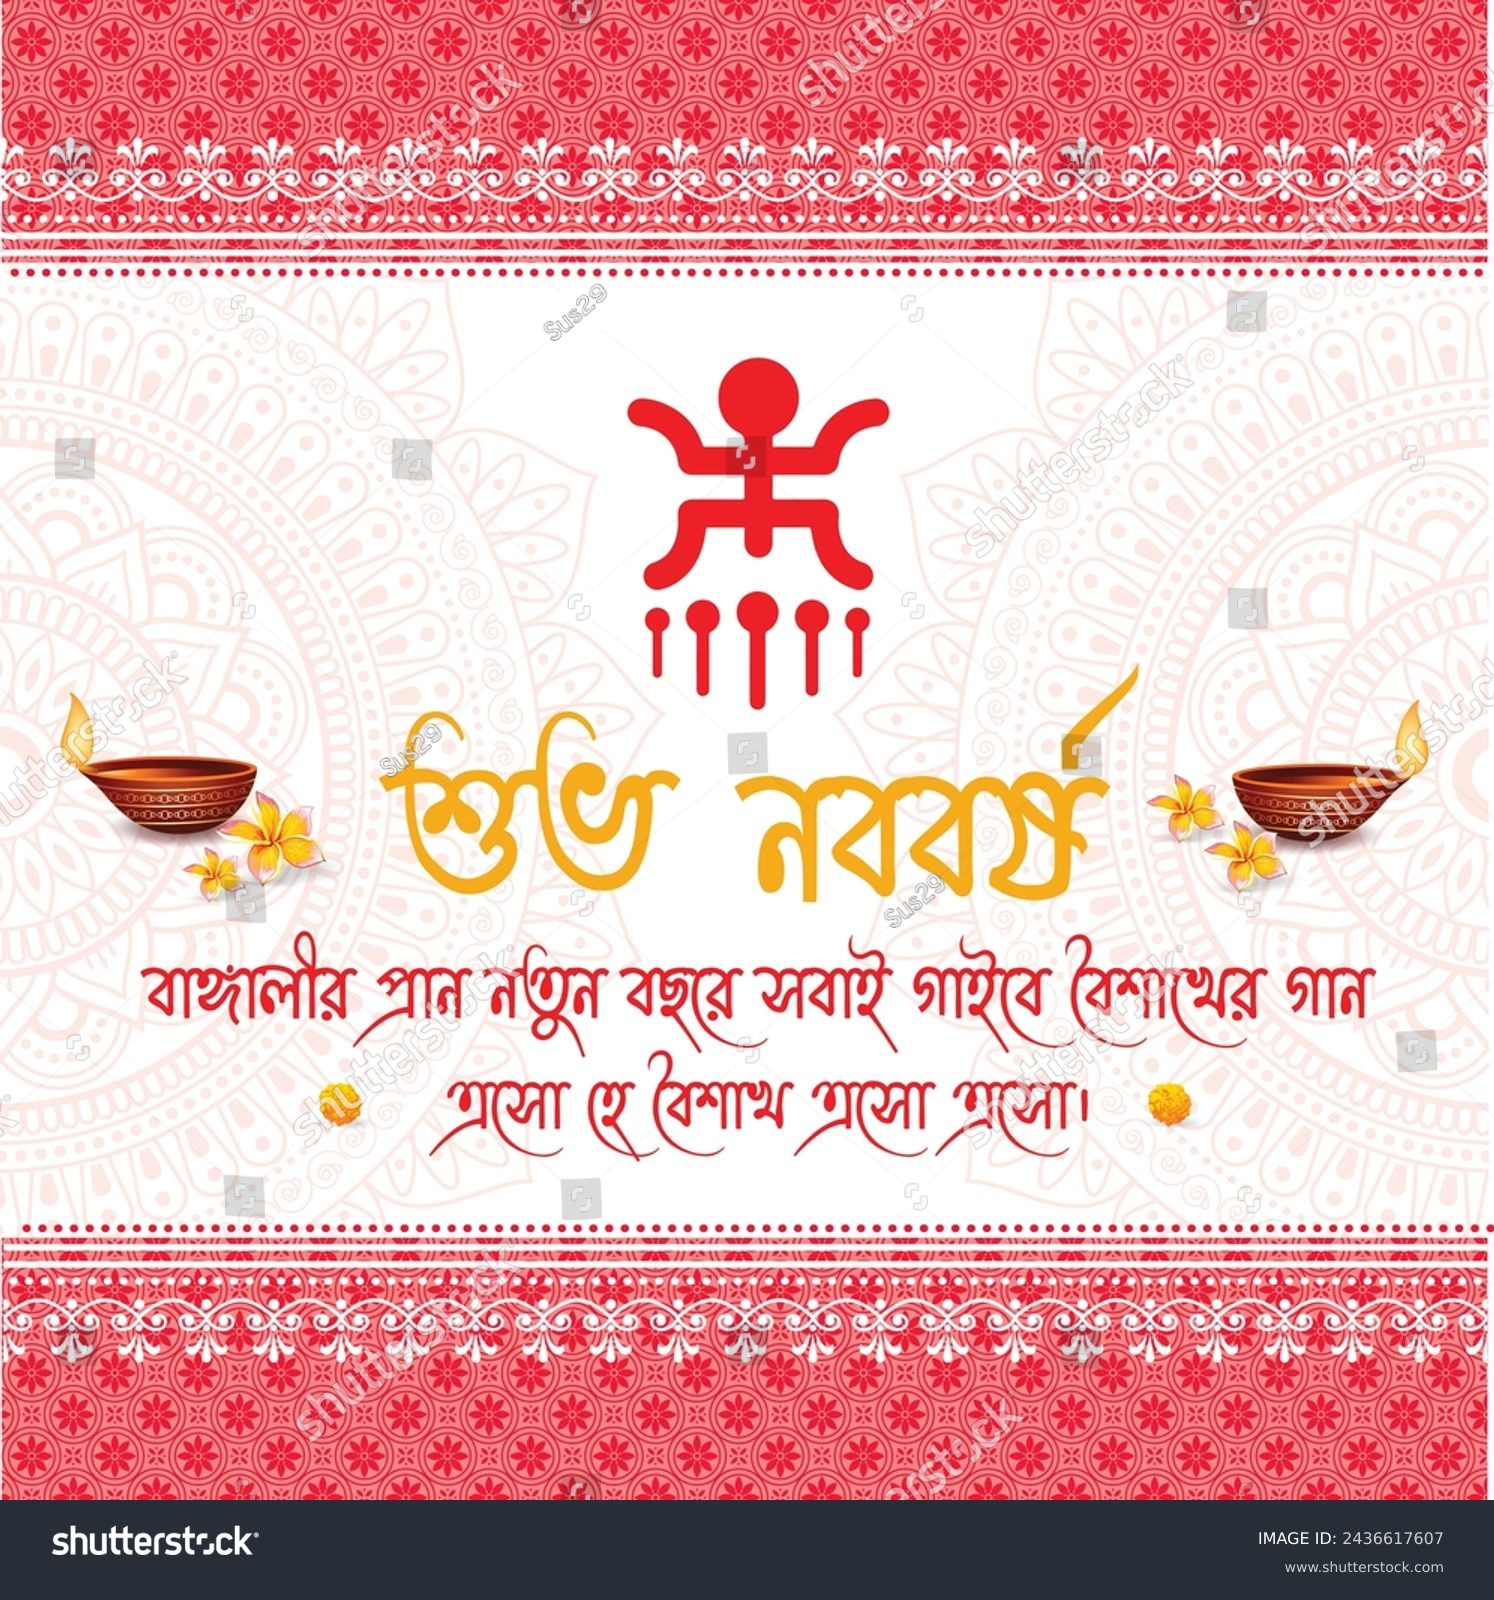 SVG of Bengali new year with Bengali text Subho Nababa
Translation: 